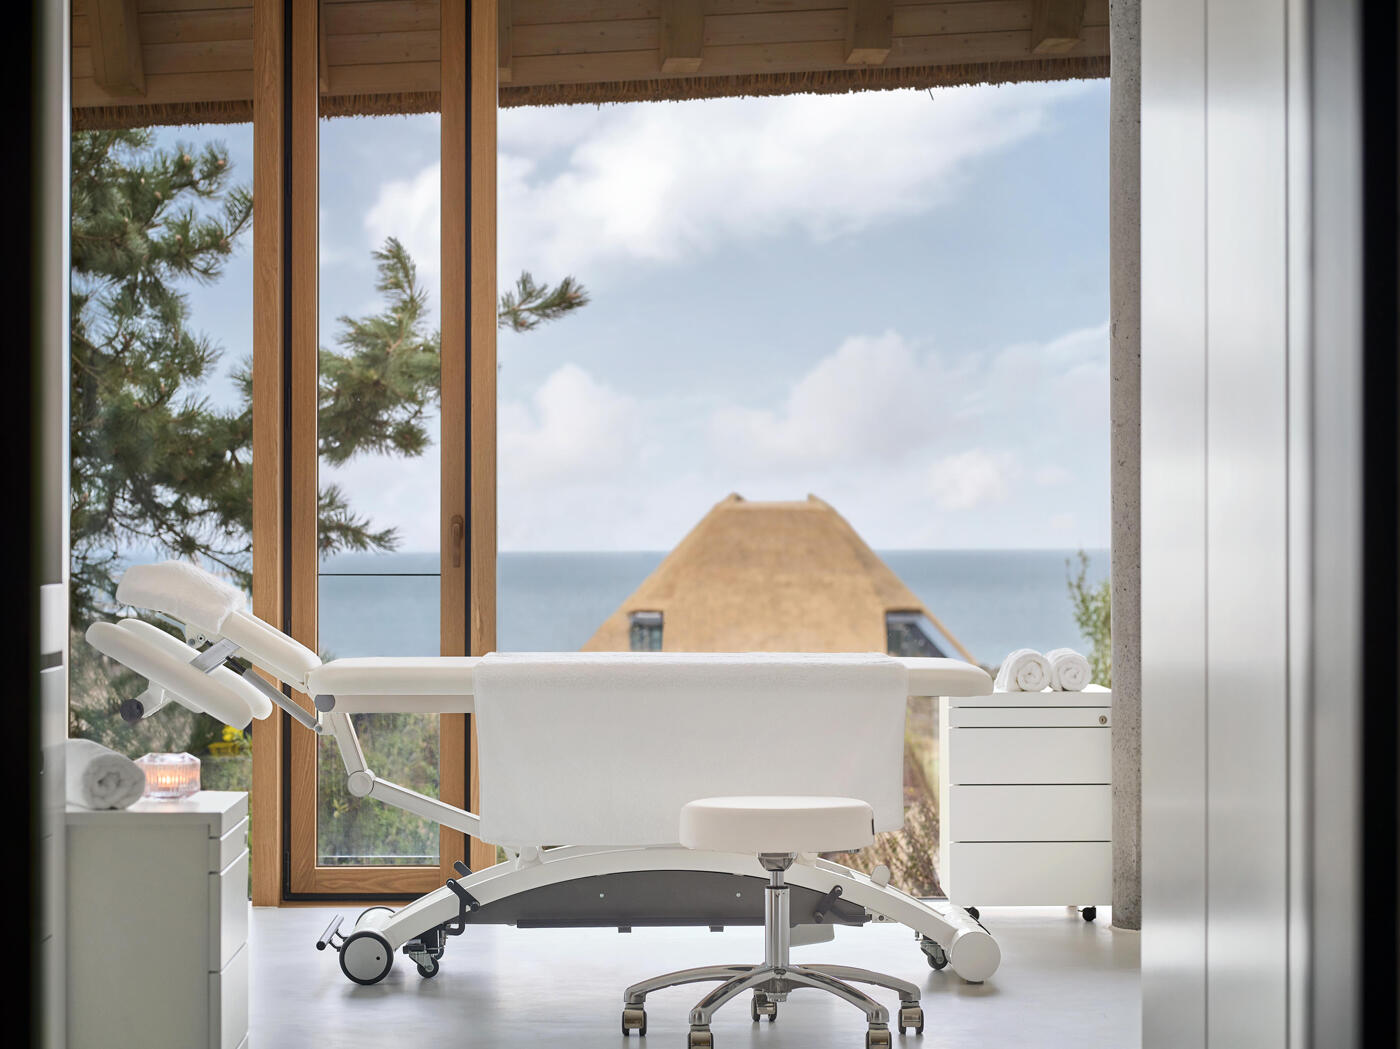 Treatmentraum im Lanzerhof: weiße Behandlungsliege in einem hellen Raum mit großen Glasfenstern und Meerblick